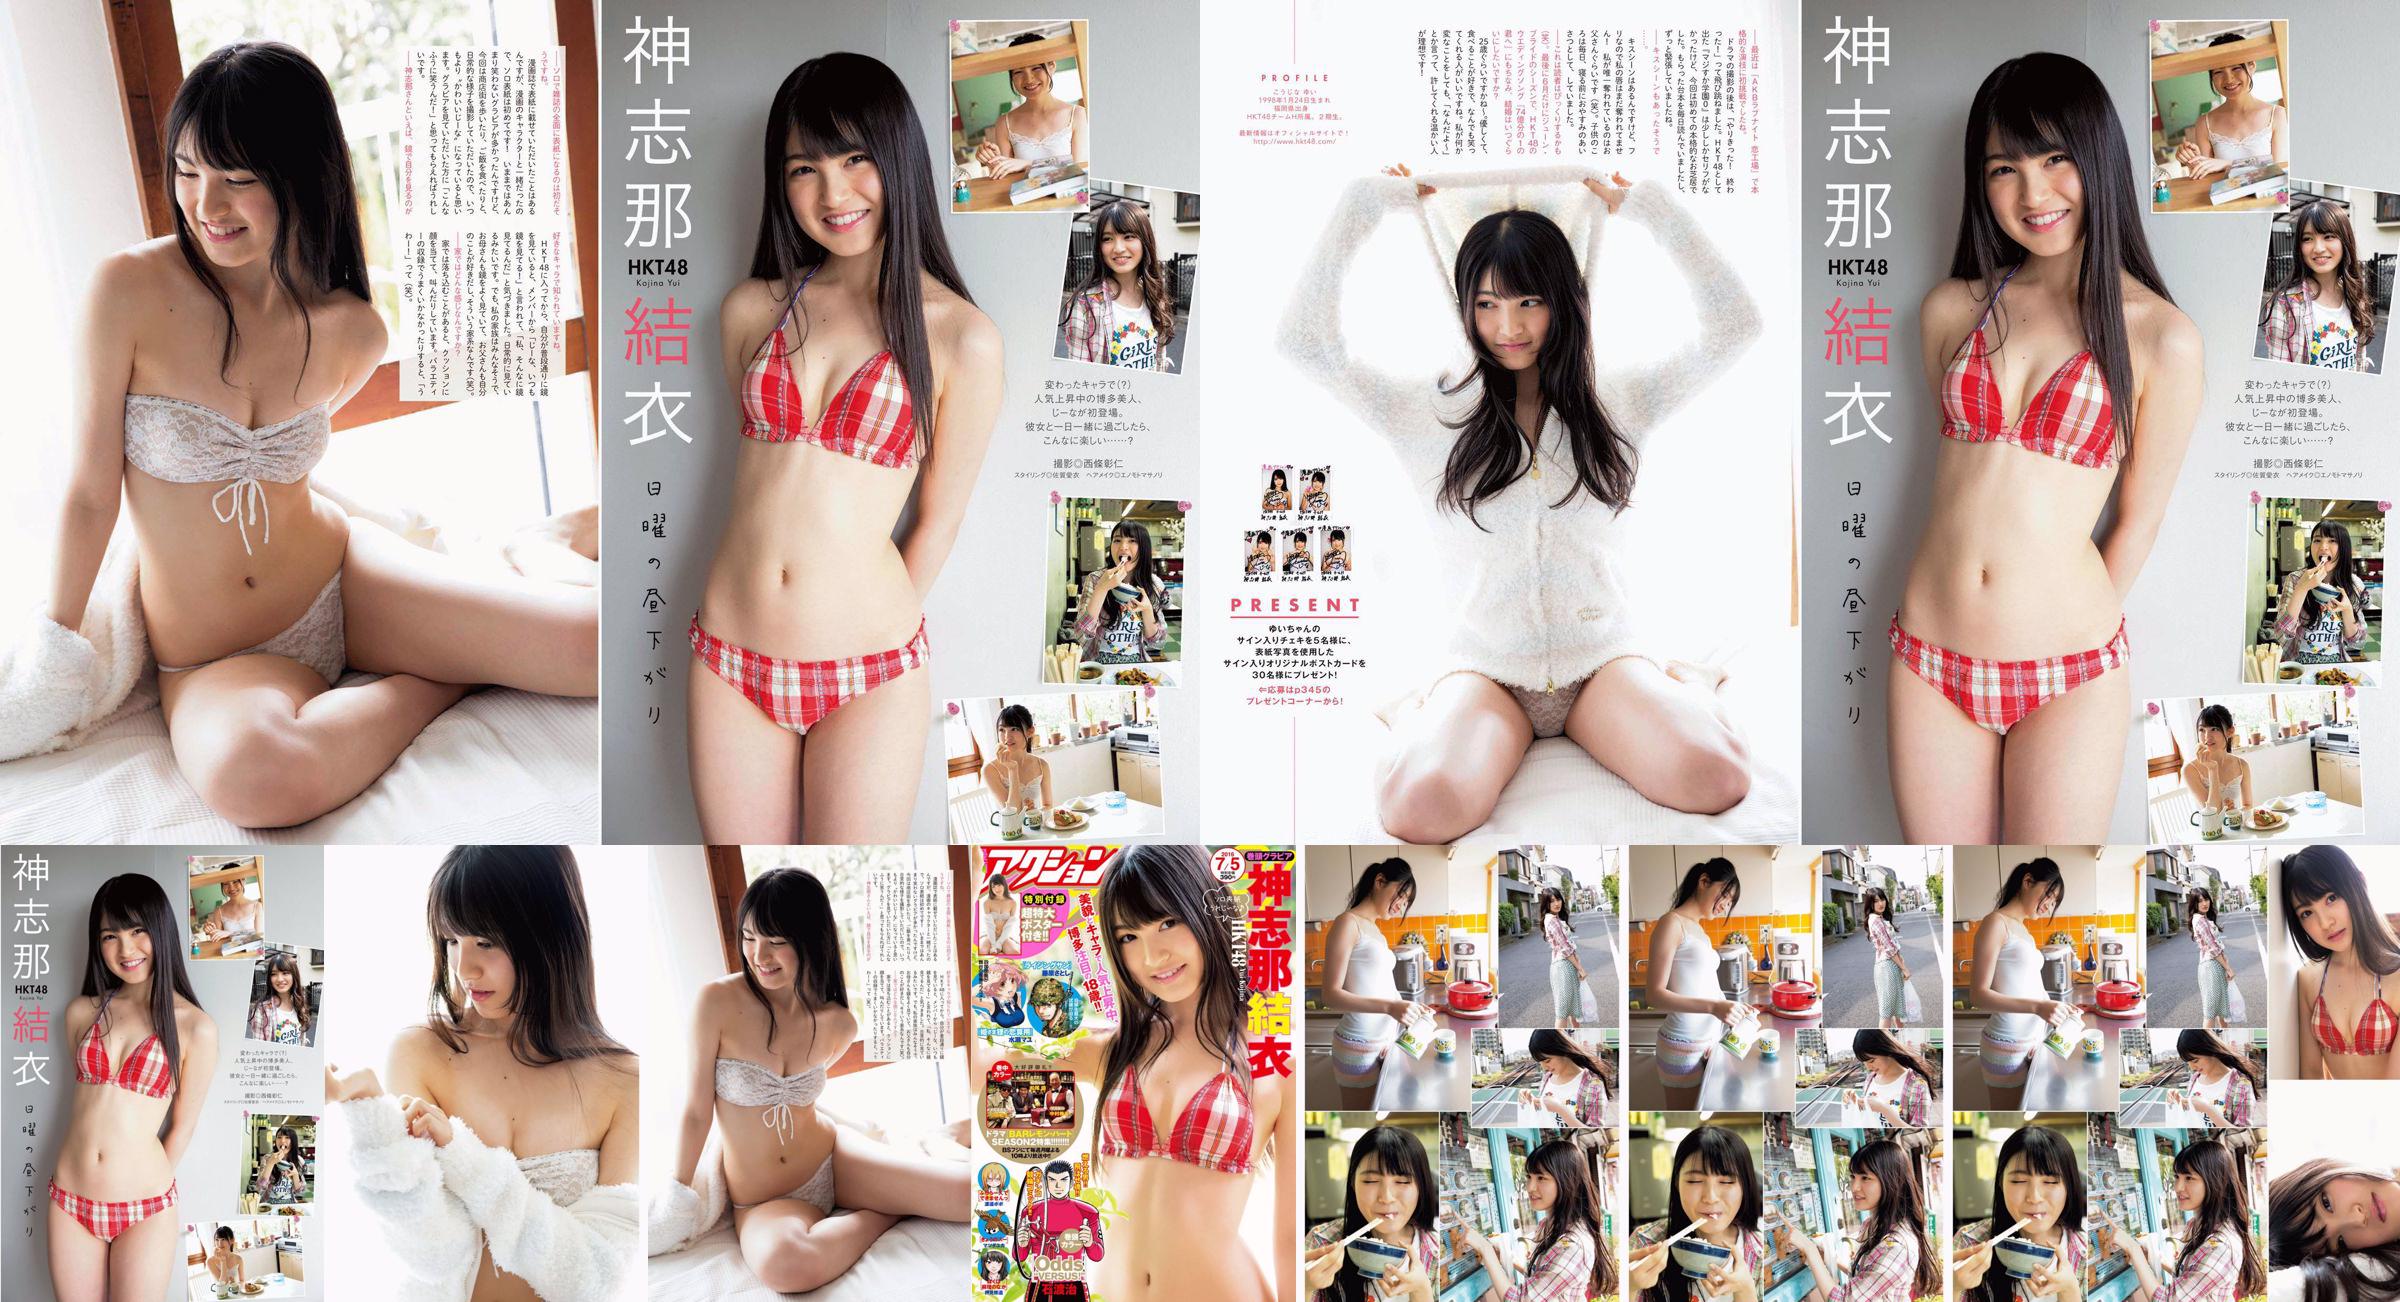 [Manga Action] Shinshina Yui 2016 No.13 Photo Magazine No.166e3c Page 4